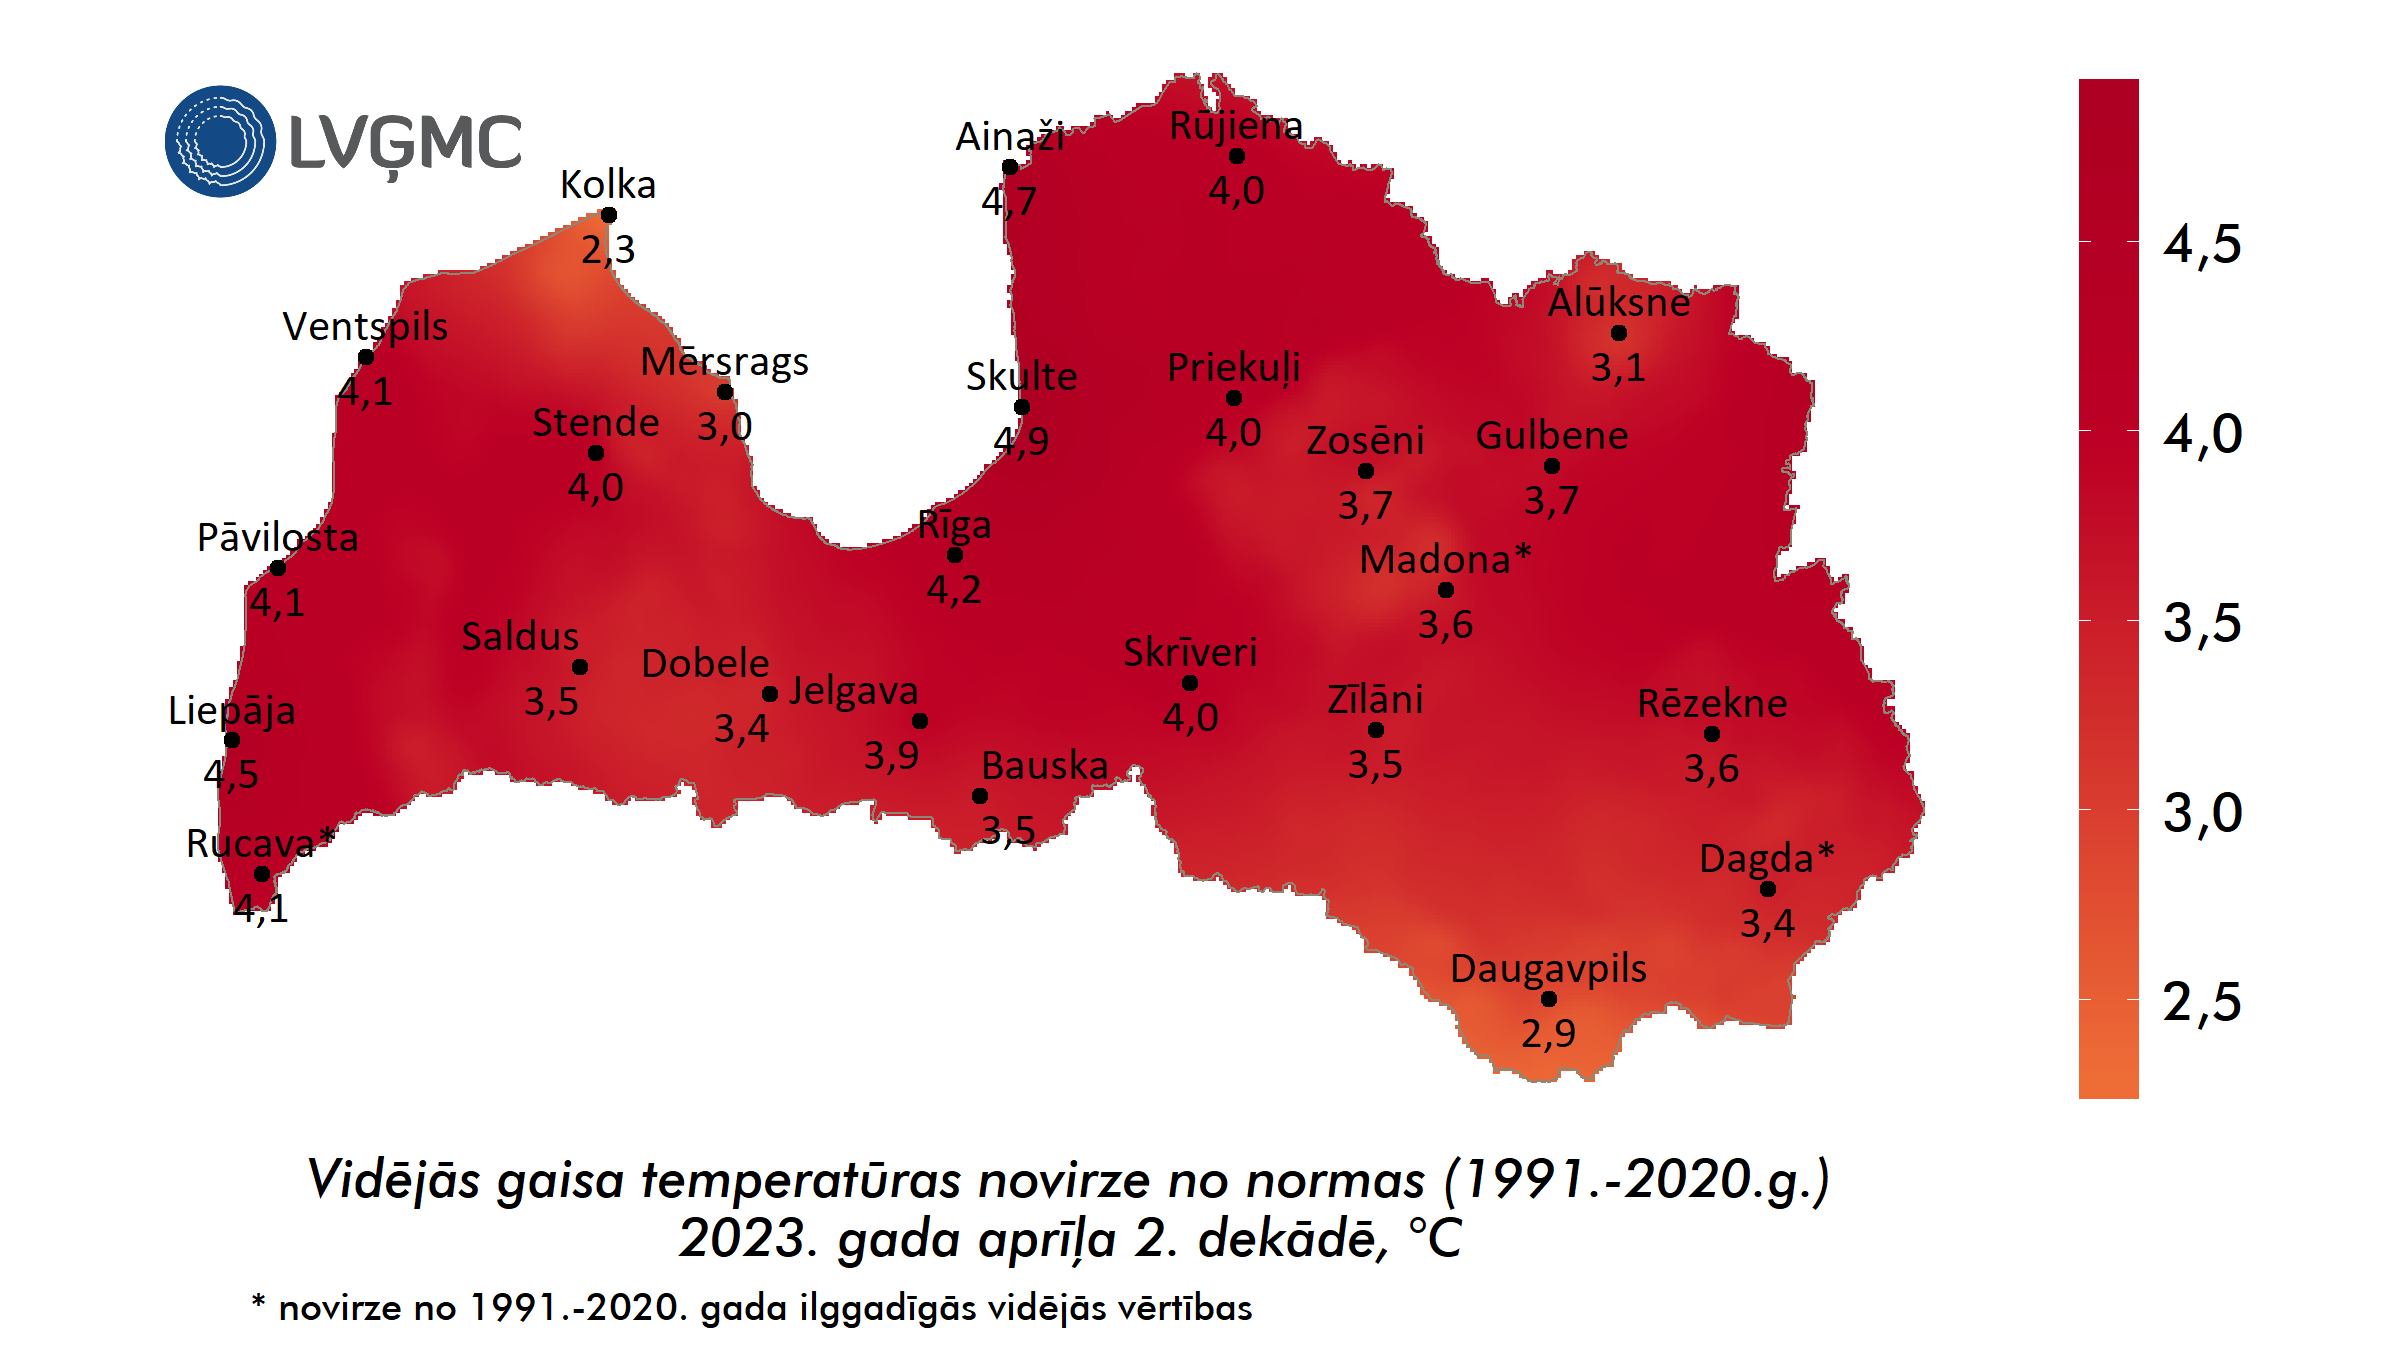 Vidējās gaisa temperatūras novirze no normas 2023. gada aprīļa 2. dekādē, °C 